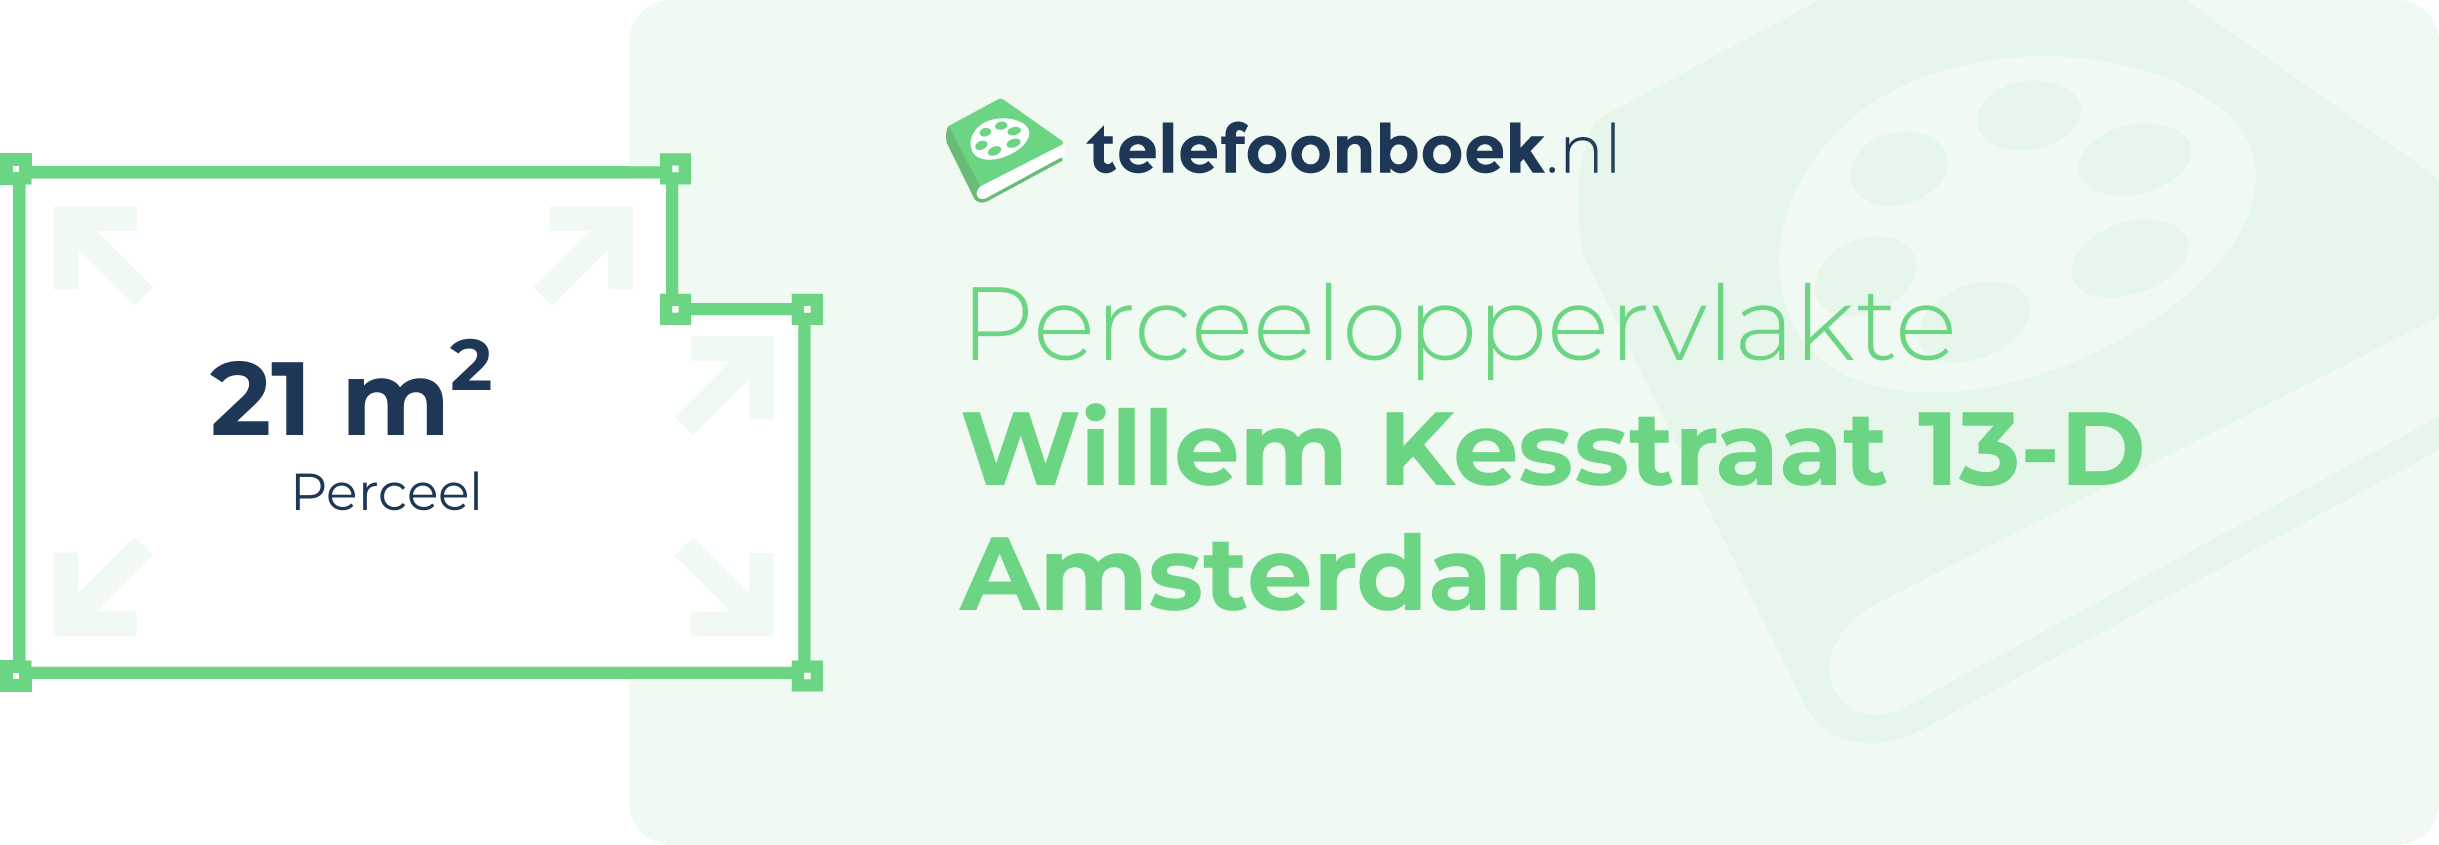 Perceeloppervlakte Willem Kesstraat 13-D Amsterdam